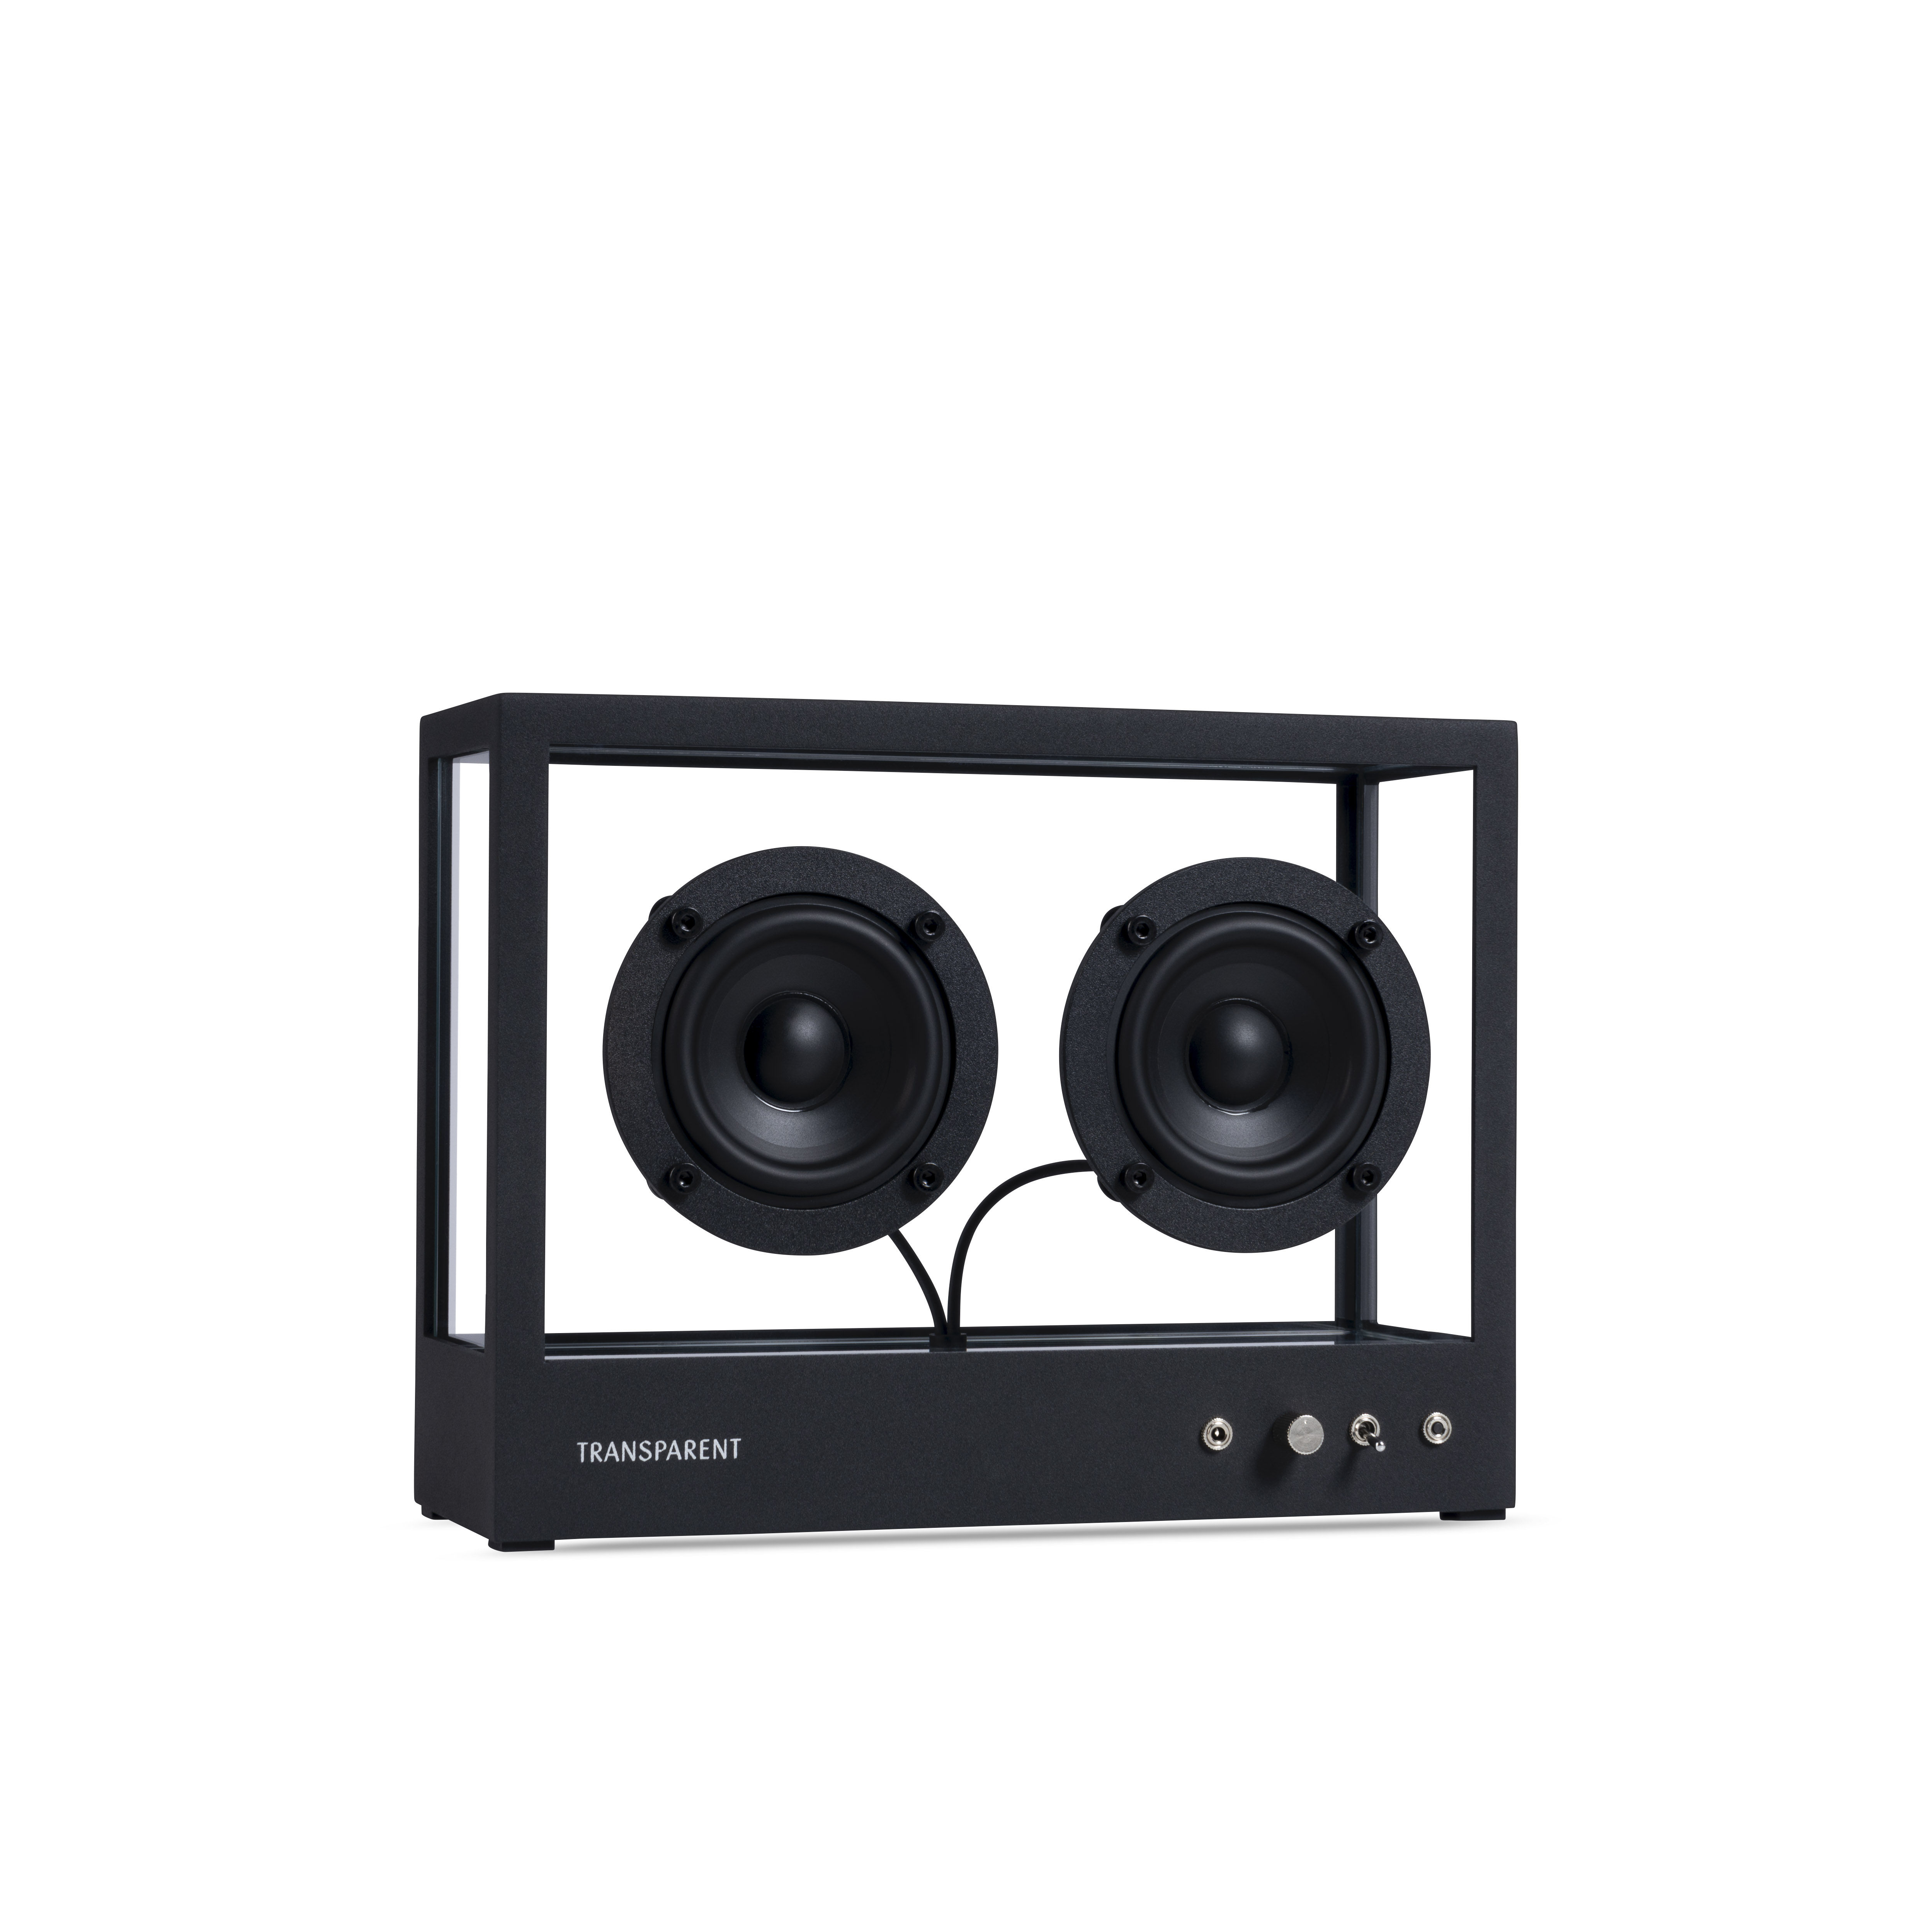 Enceinte Small / L 26 x H 20 cm - Verre trempé - Transparent Speaker noir/transparent en verre